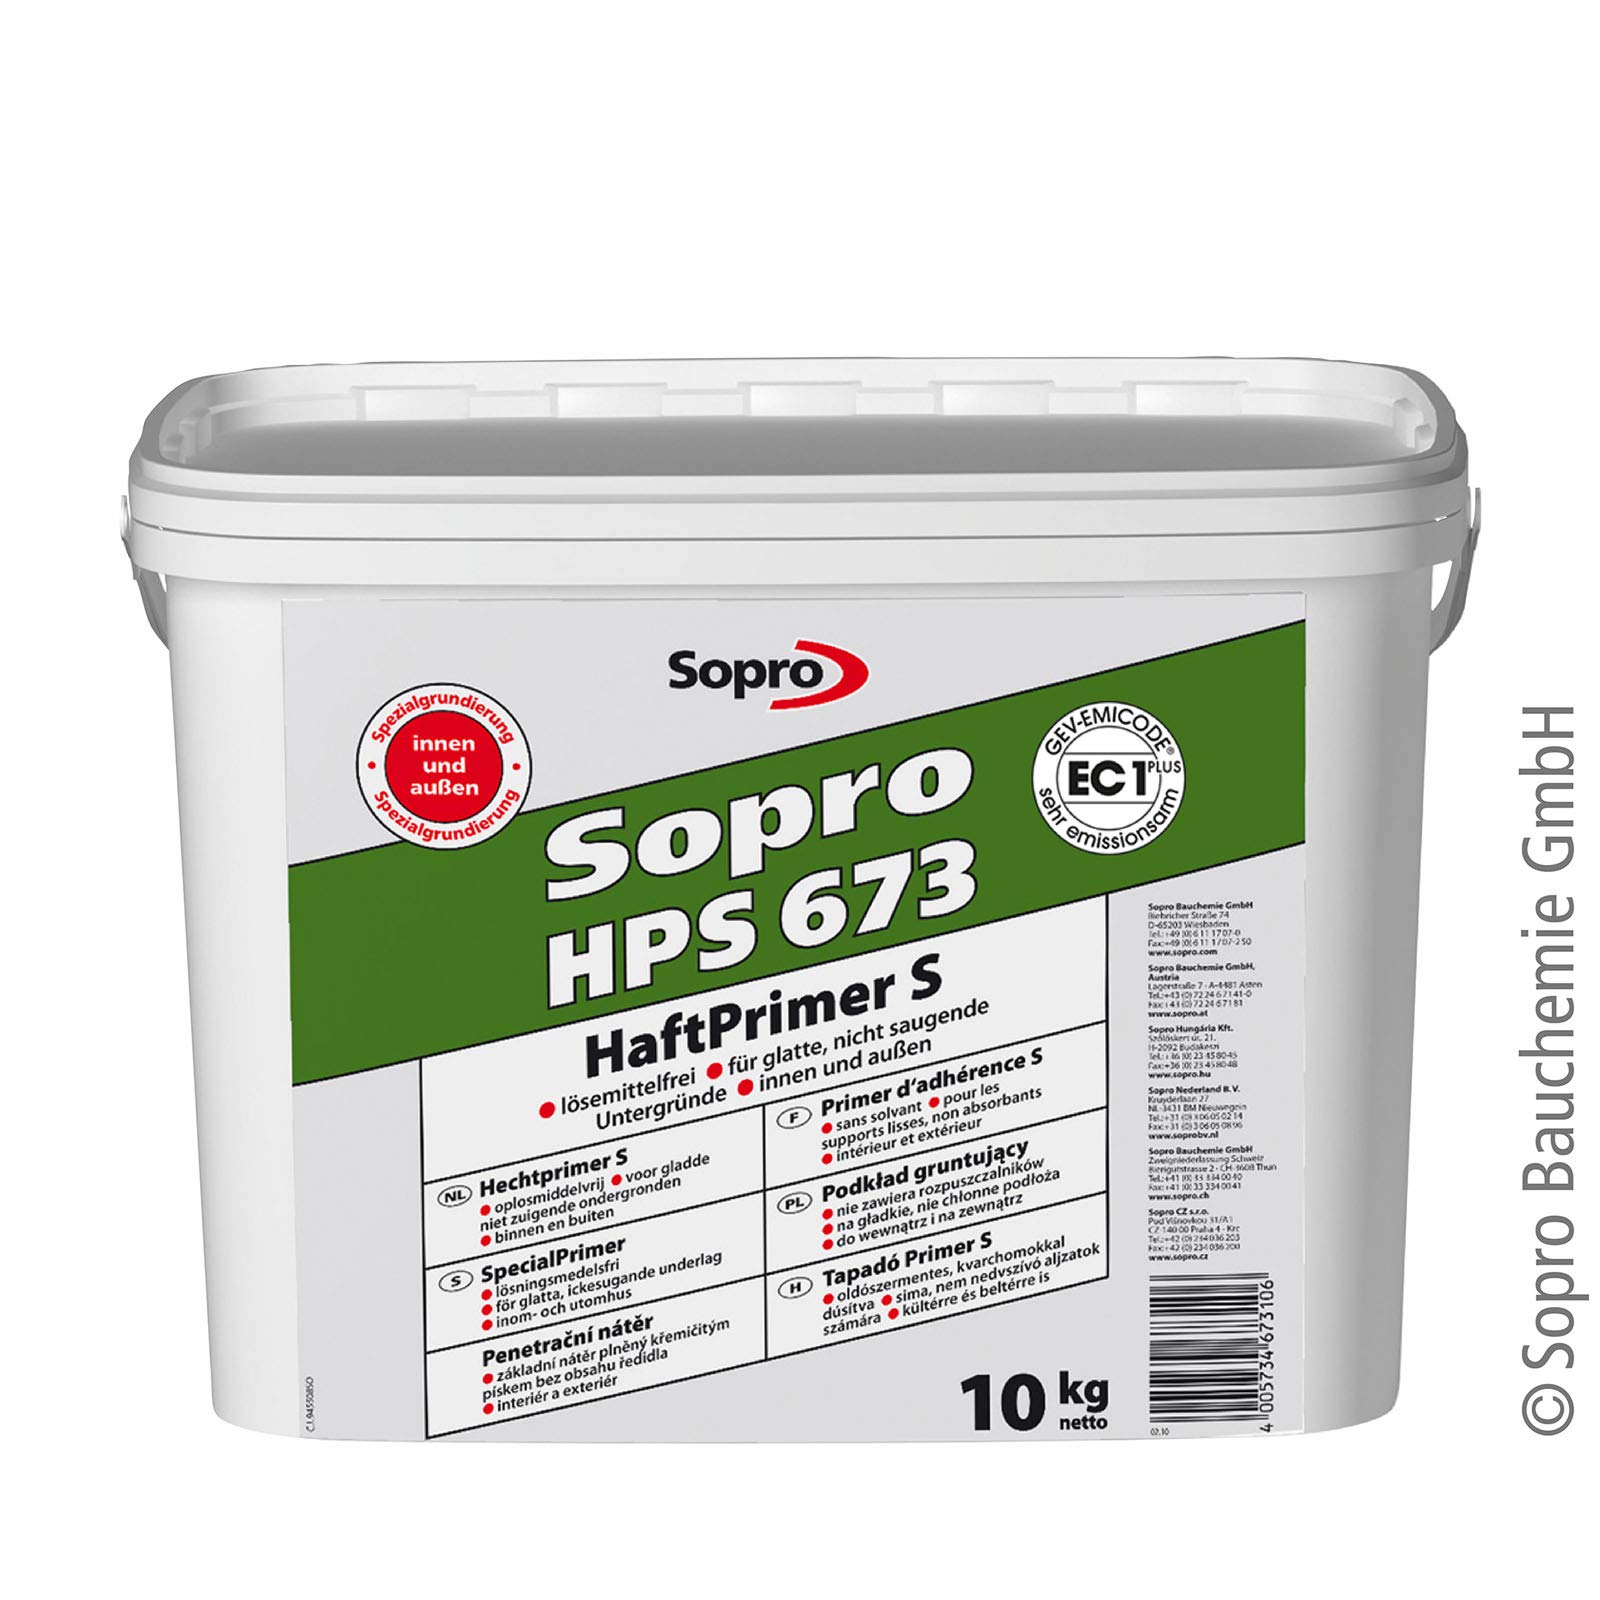 Sopro HaftPrimer S HPS 673 10kg Eimer (1)